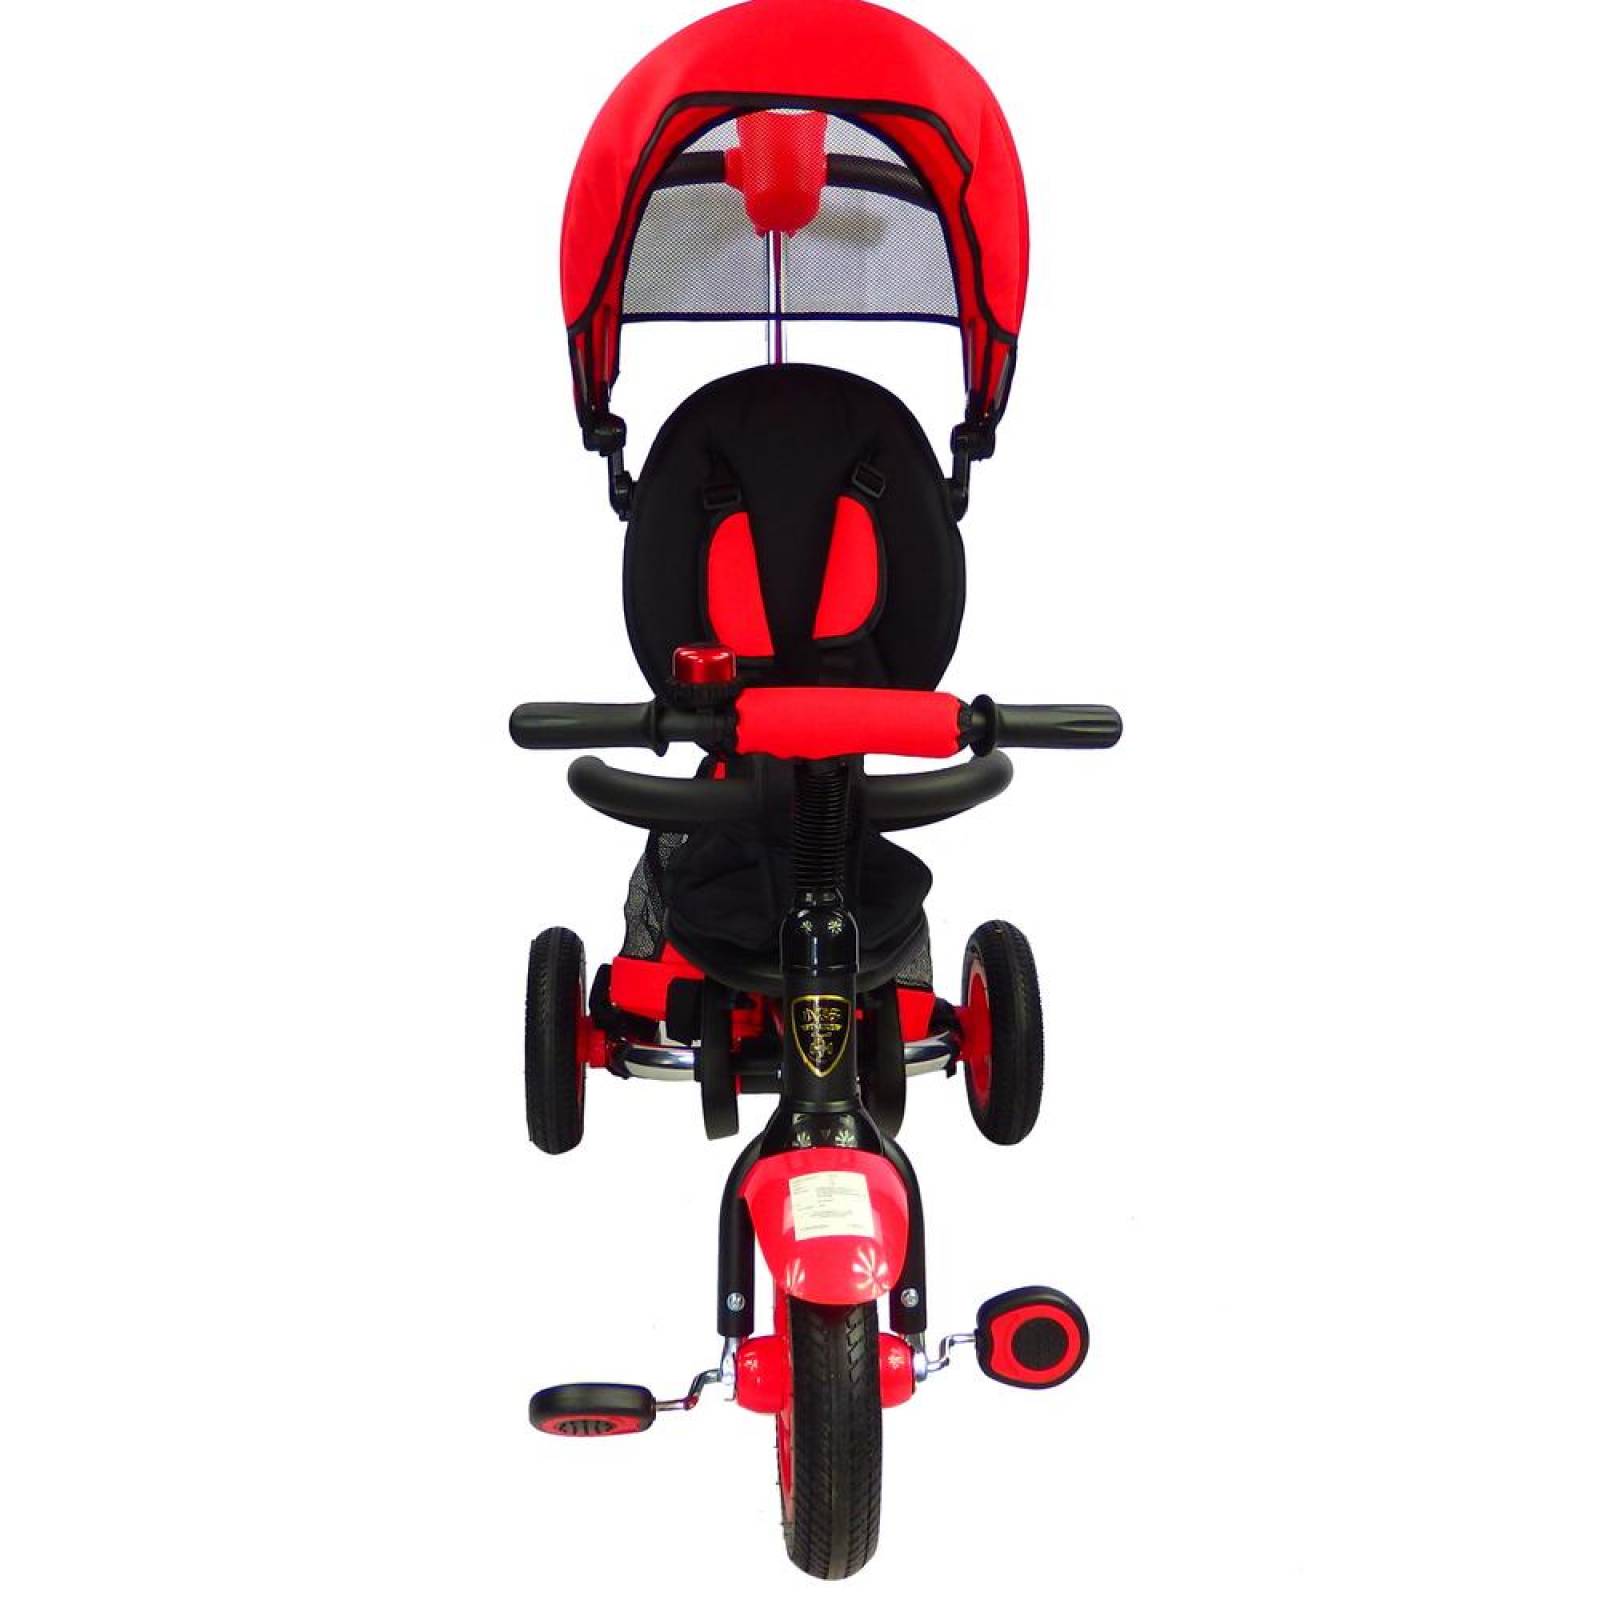 Triciclo para Bebe de lujo Llantas de Aire Evolutivo 6 meses a 5 años Rojo 